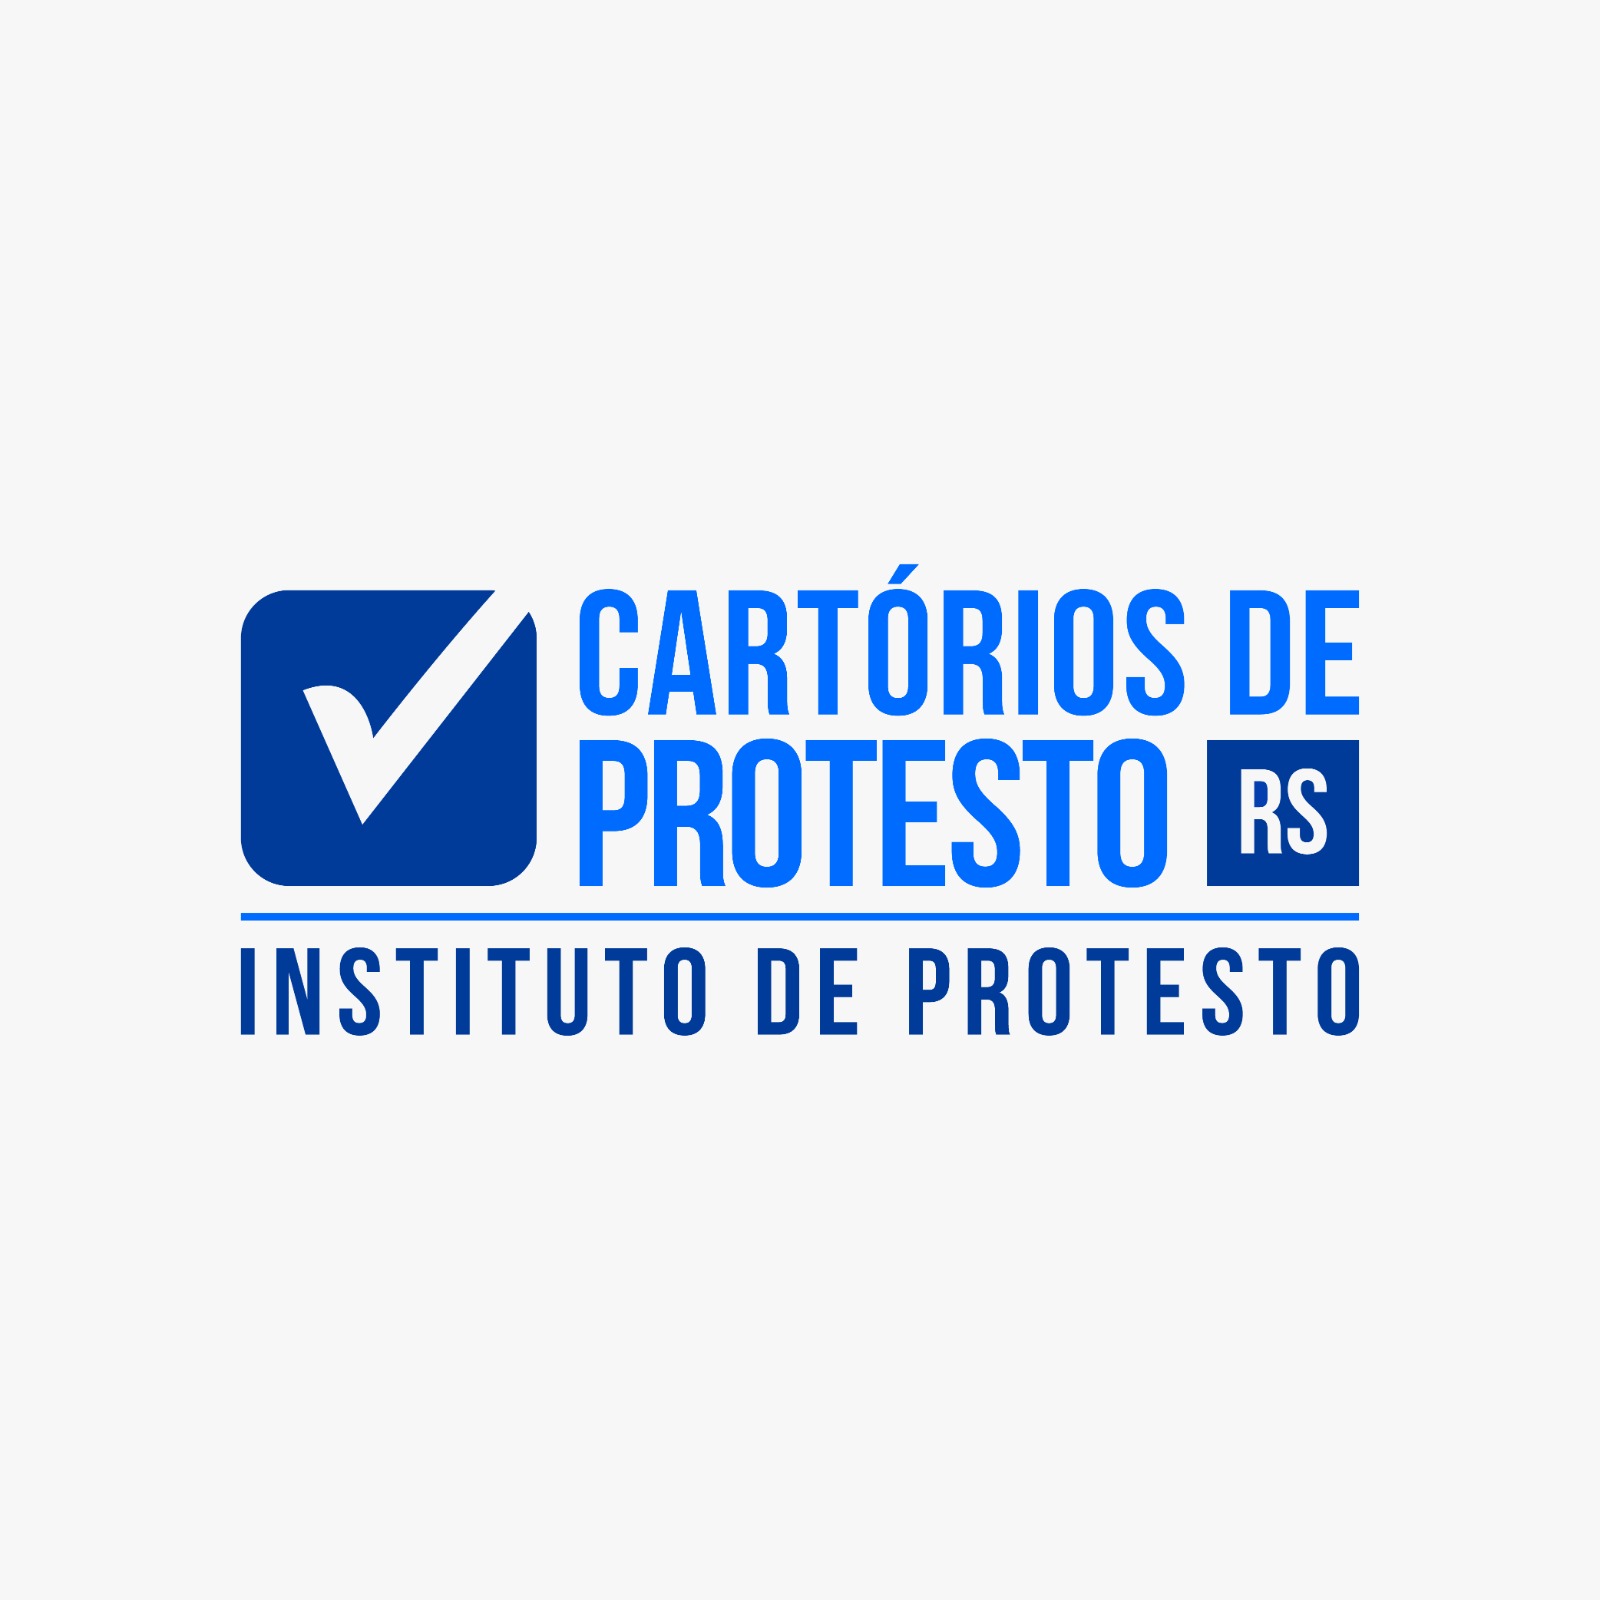 Instituto de protesto